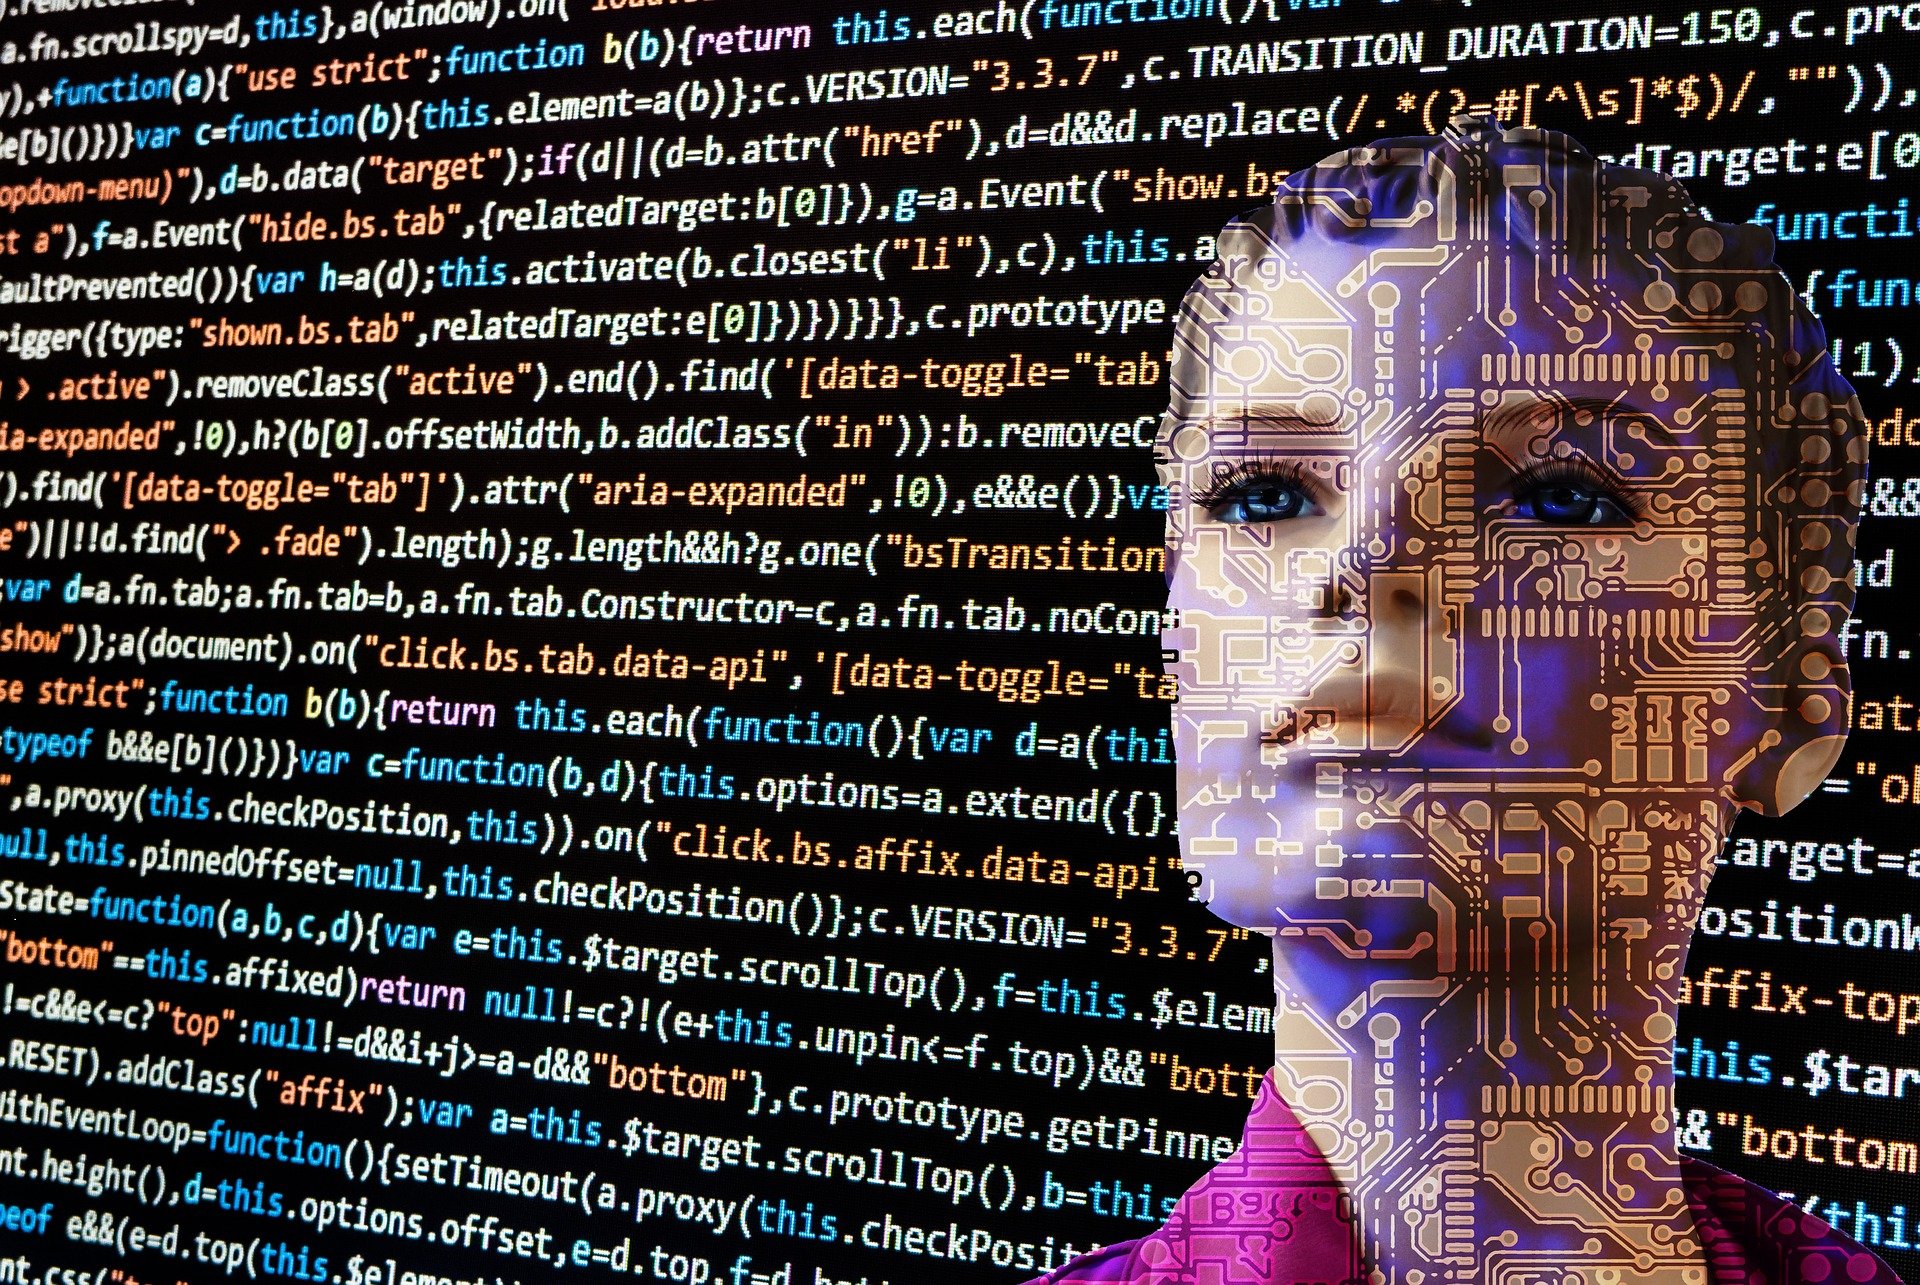 Futuro da IA: Em breve ela mesma gerenciará seus dados